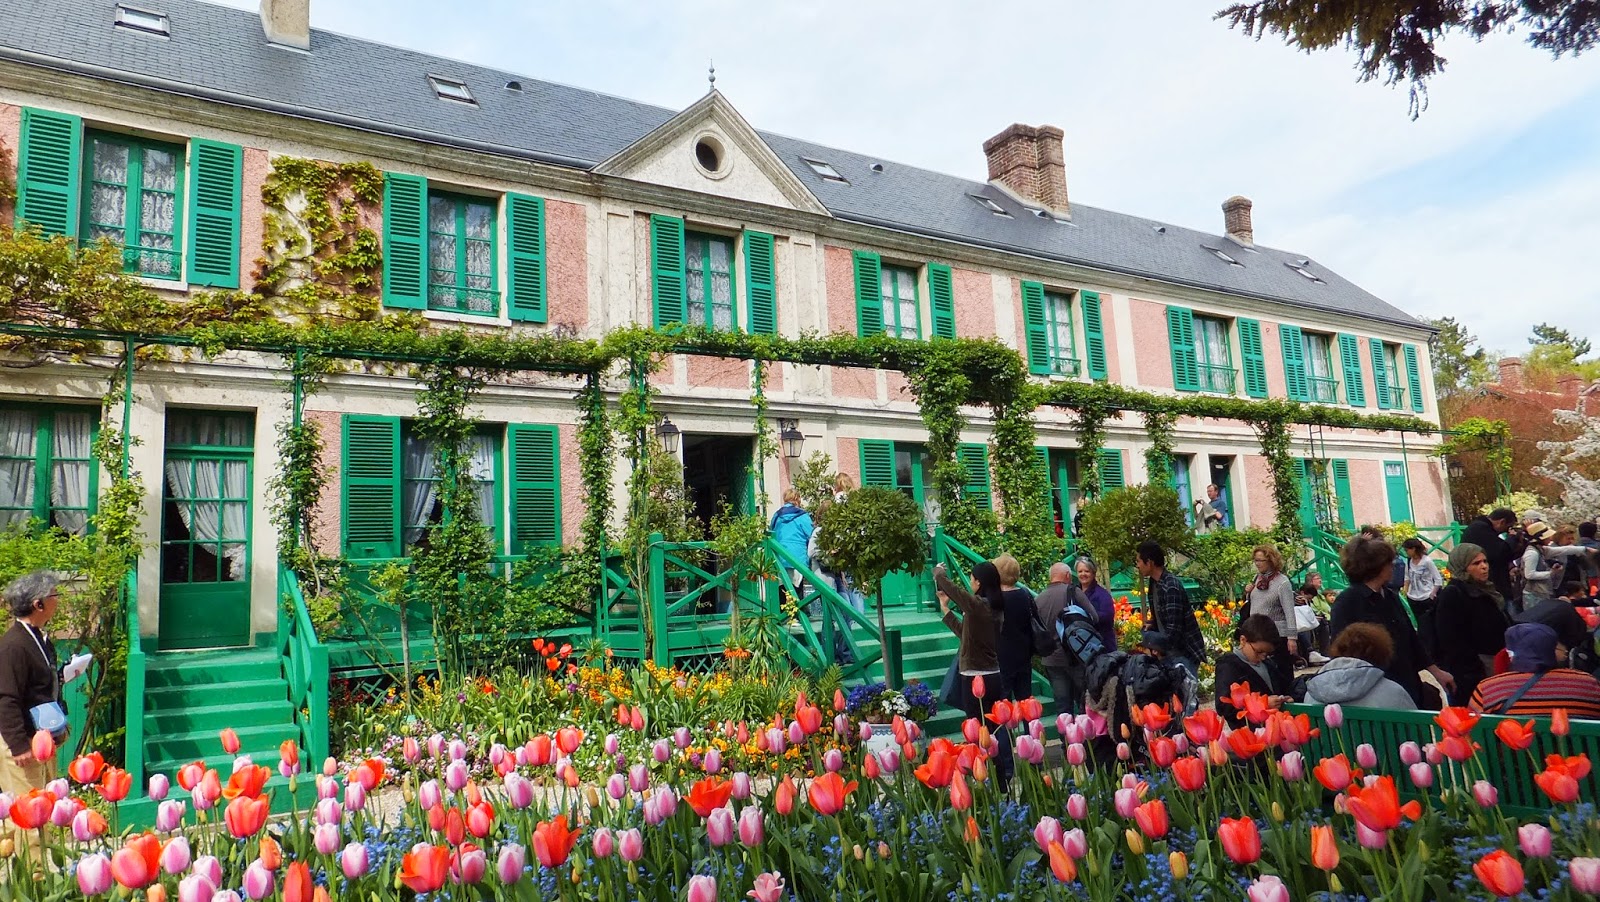 Casa y Jardines de Monet, Giverny, Francia, Elisa N, Blog de Viajes